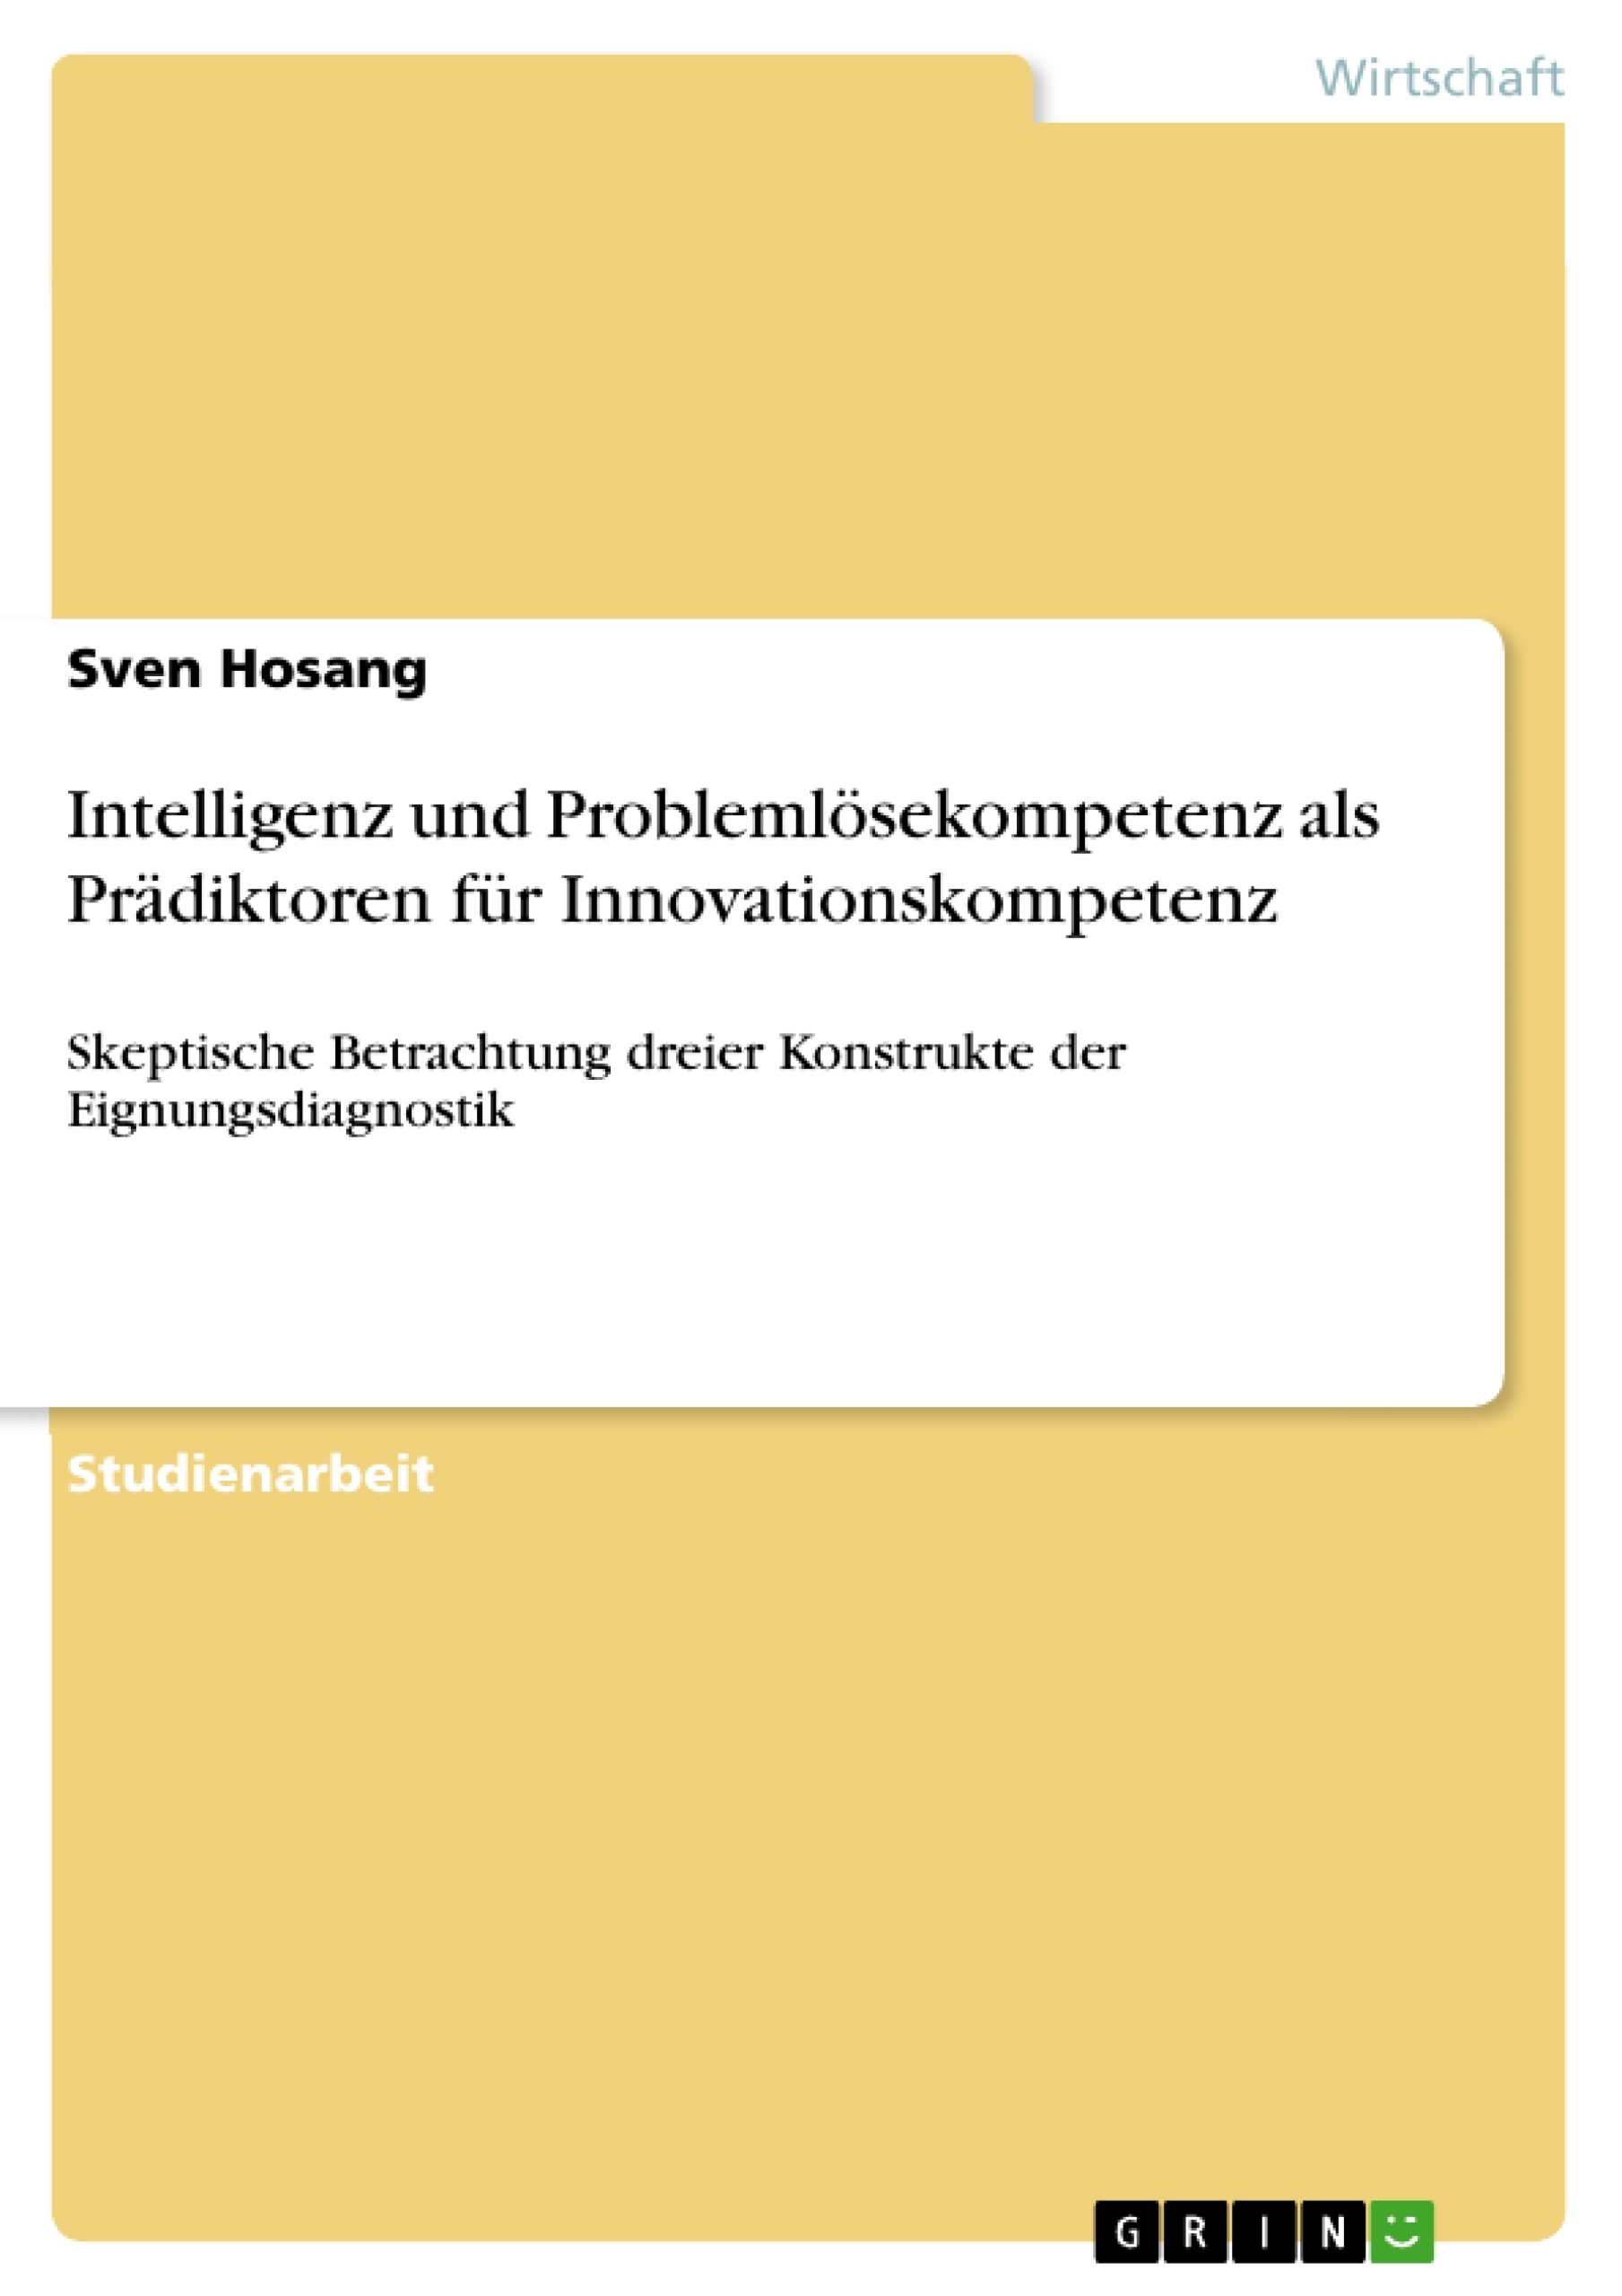 Title: Intelligenz und Problemlösekompetenz als Prädiktoren für Innovationskompetenz